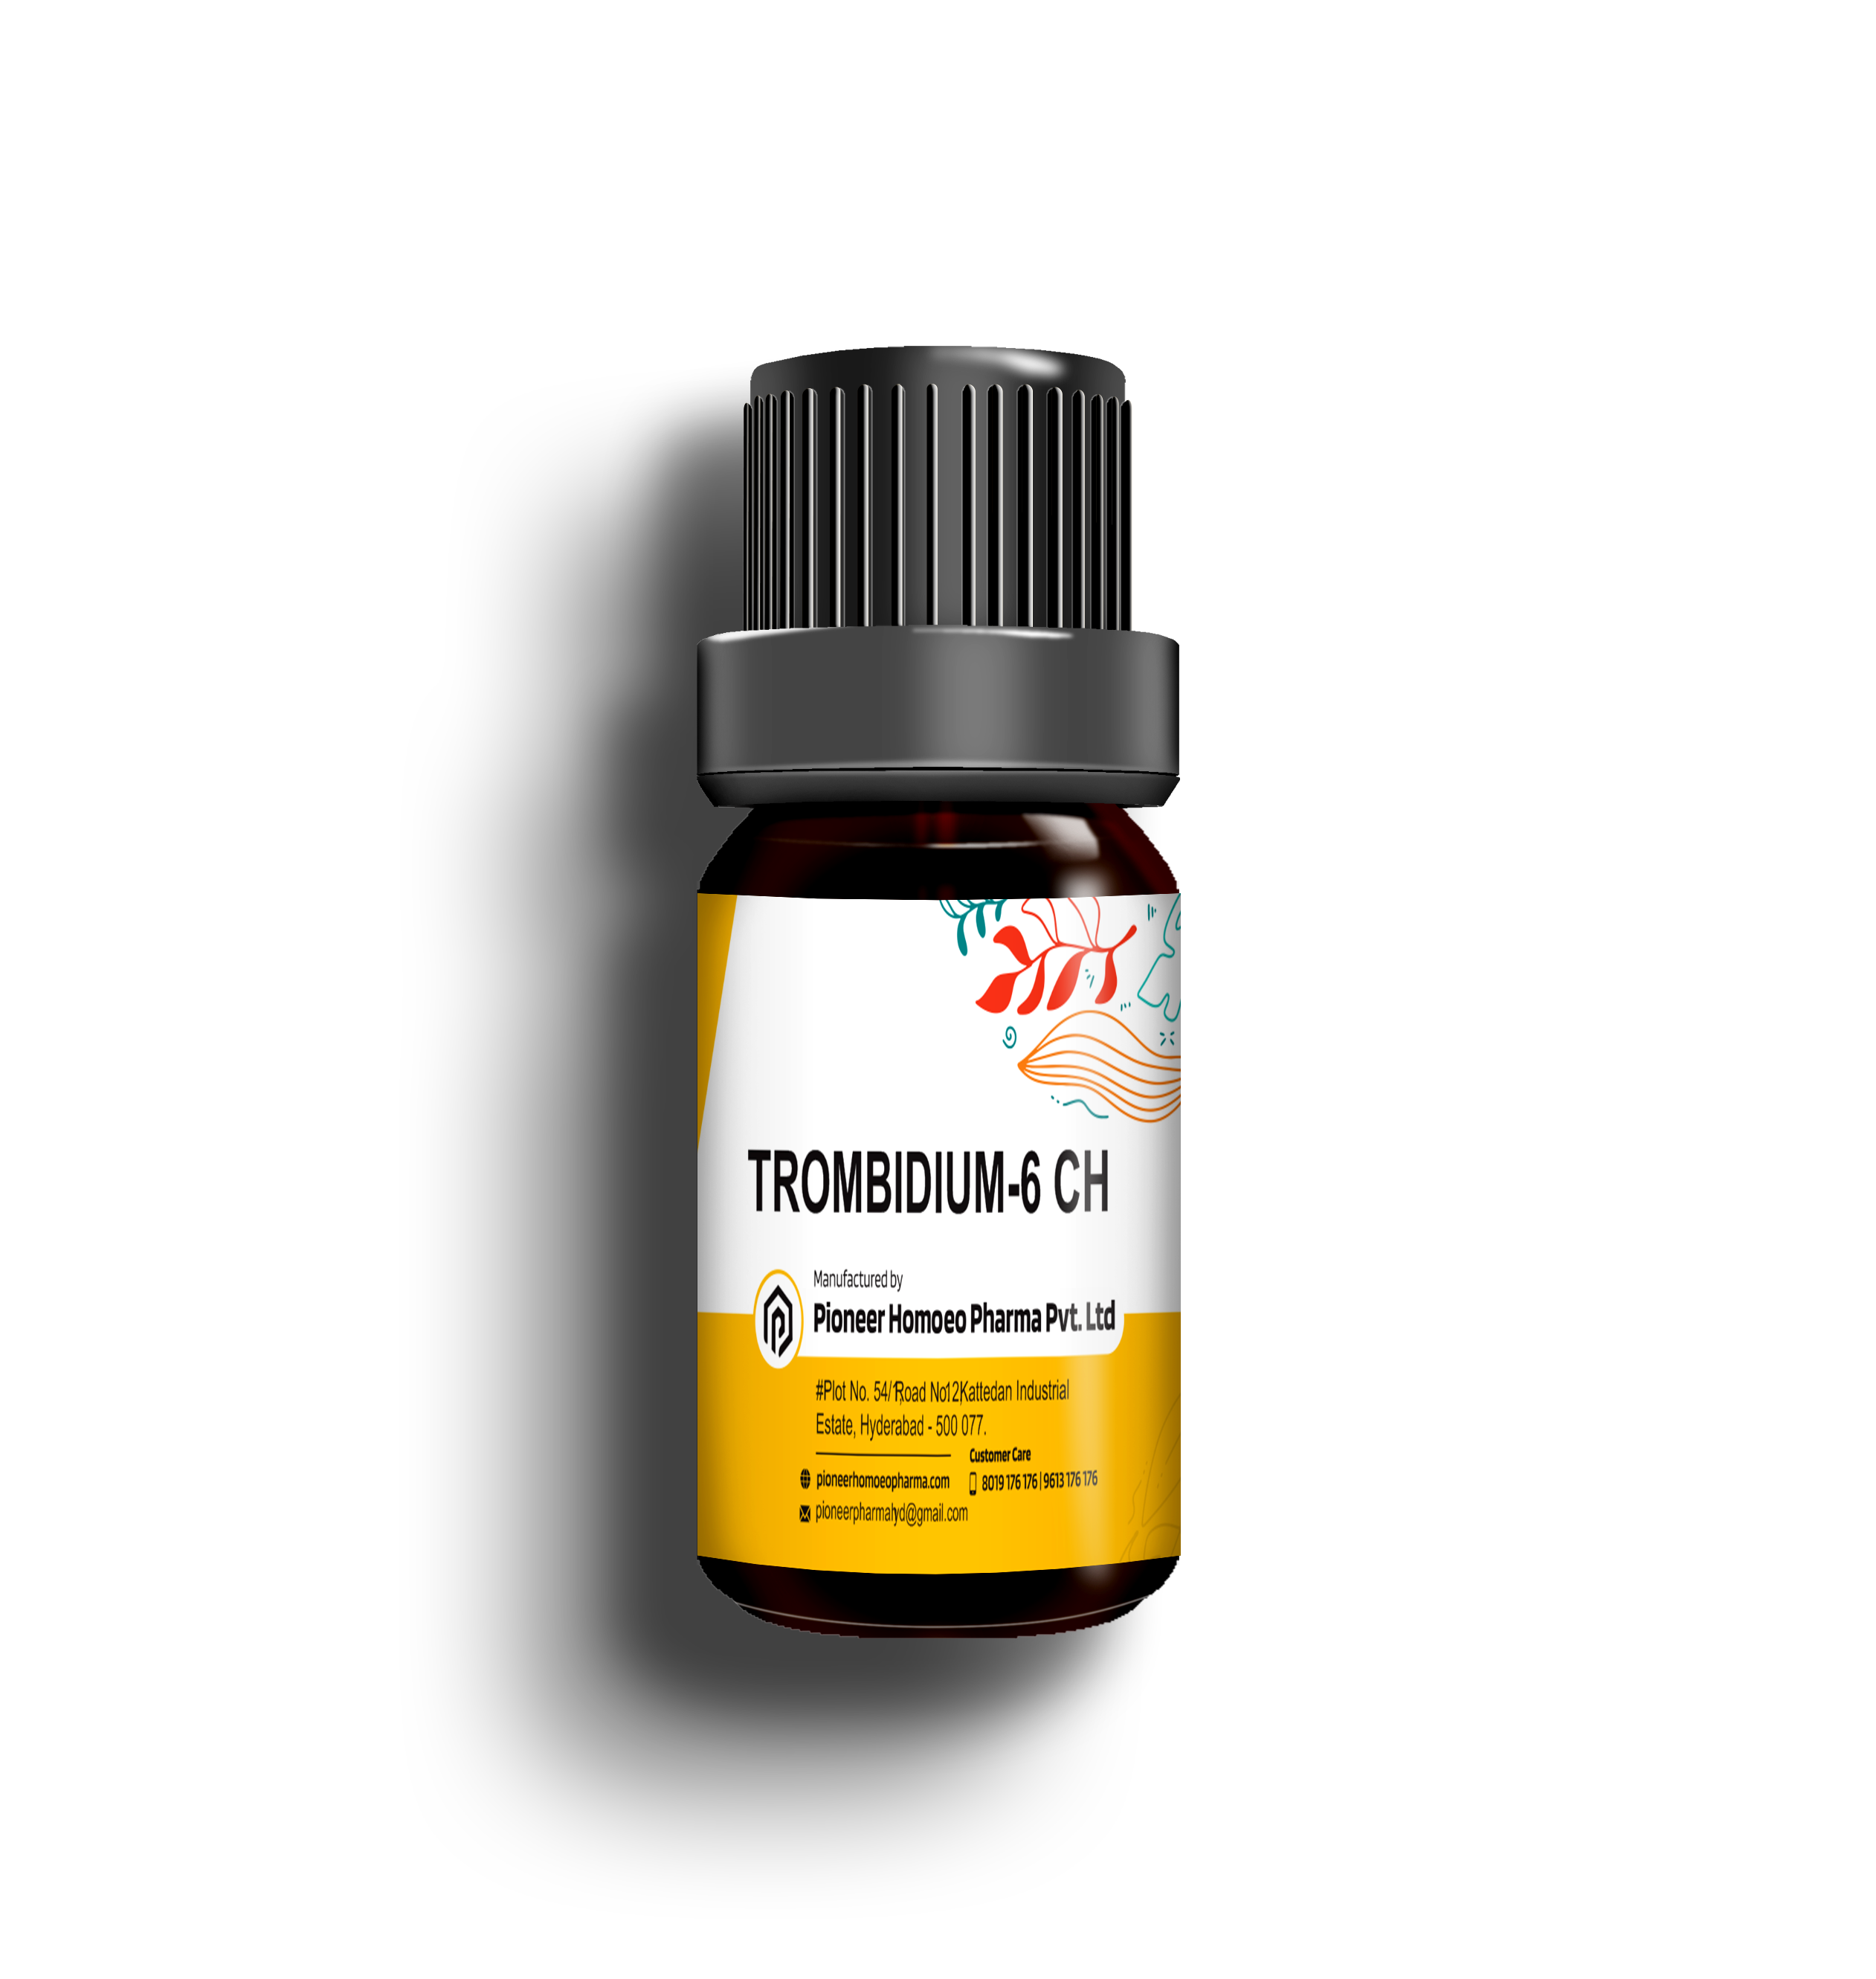 TROMBIDIUM-6-CH